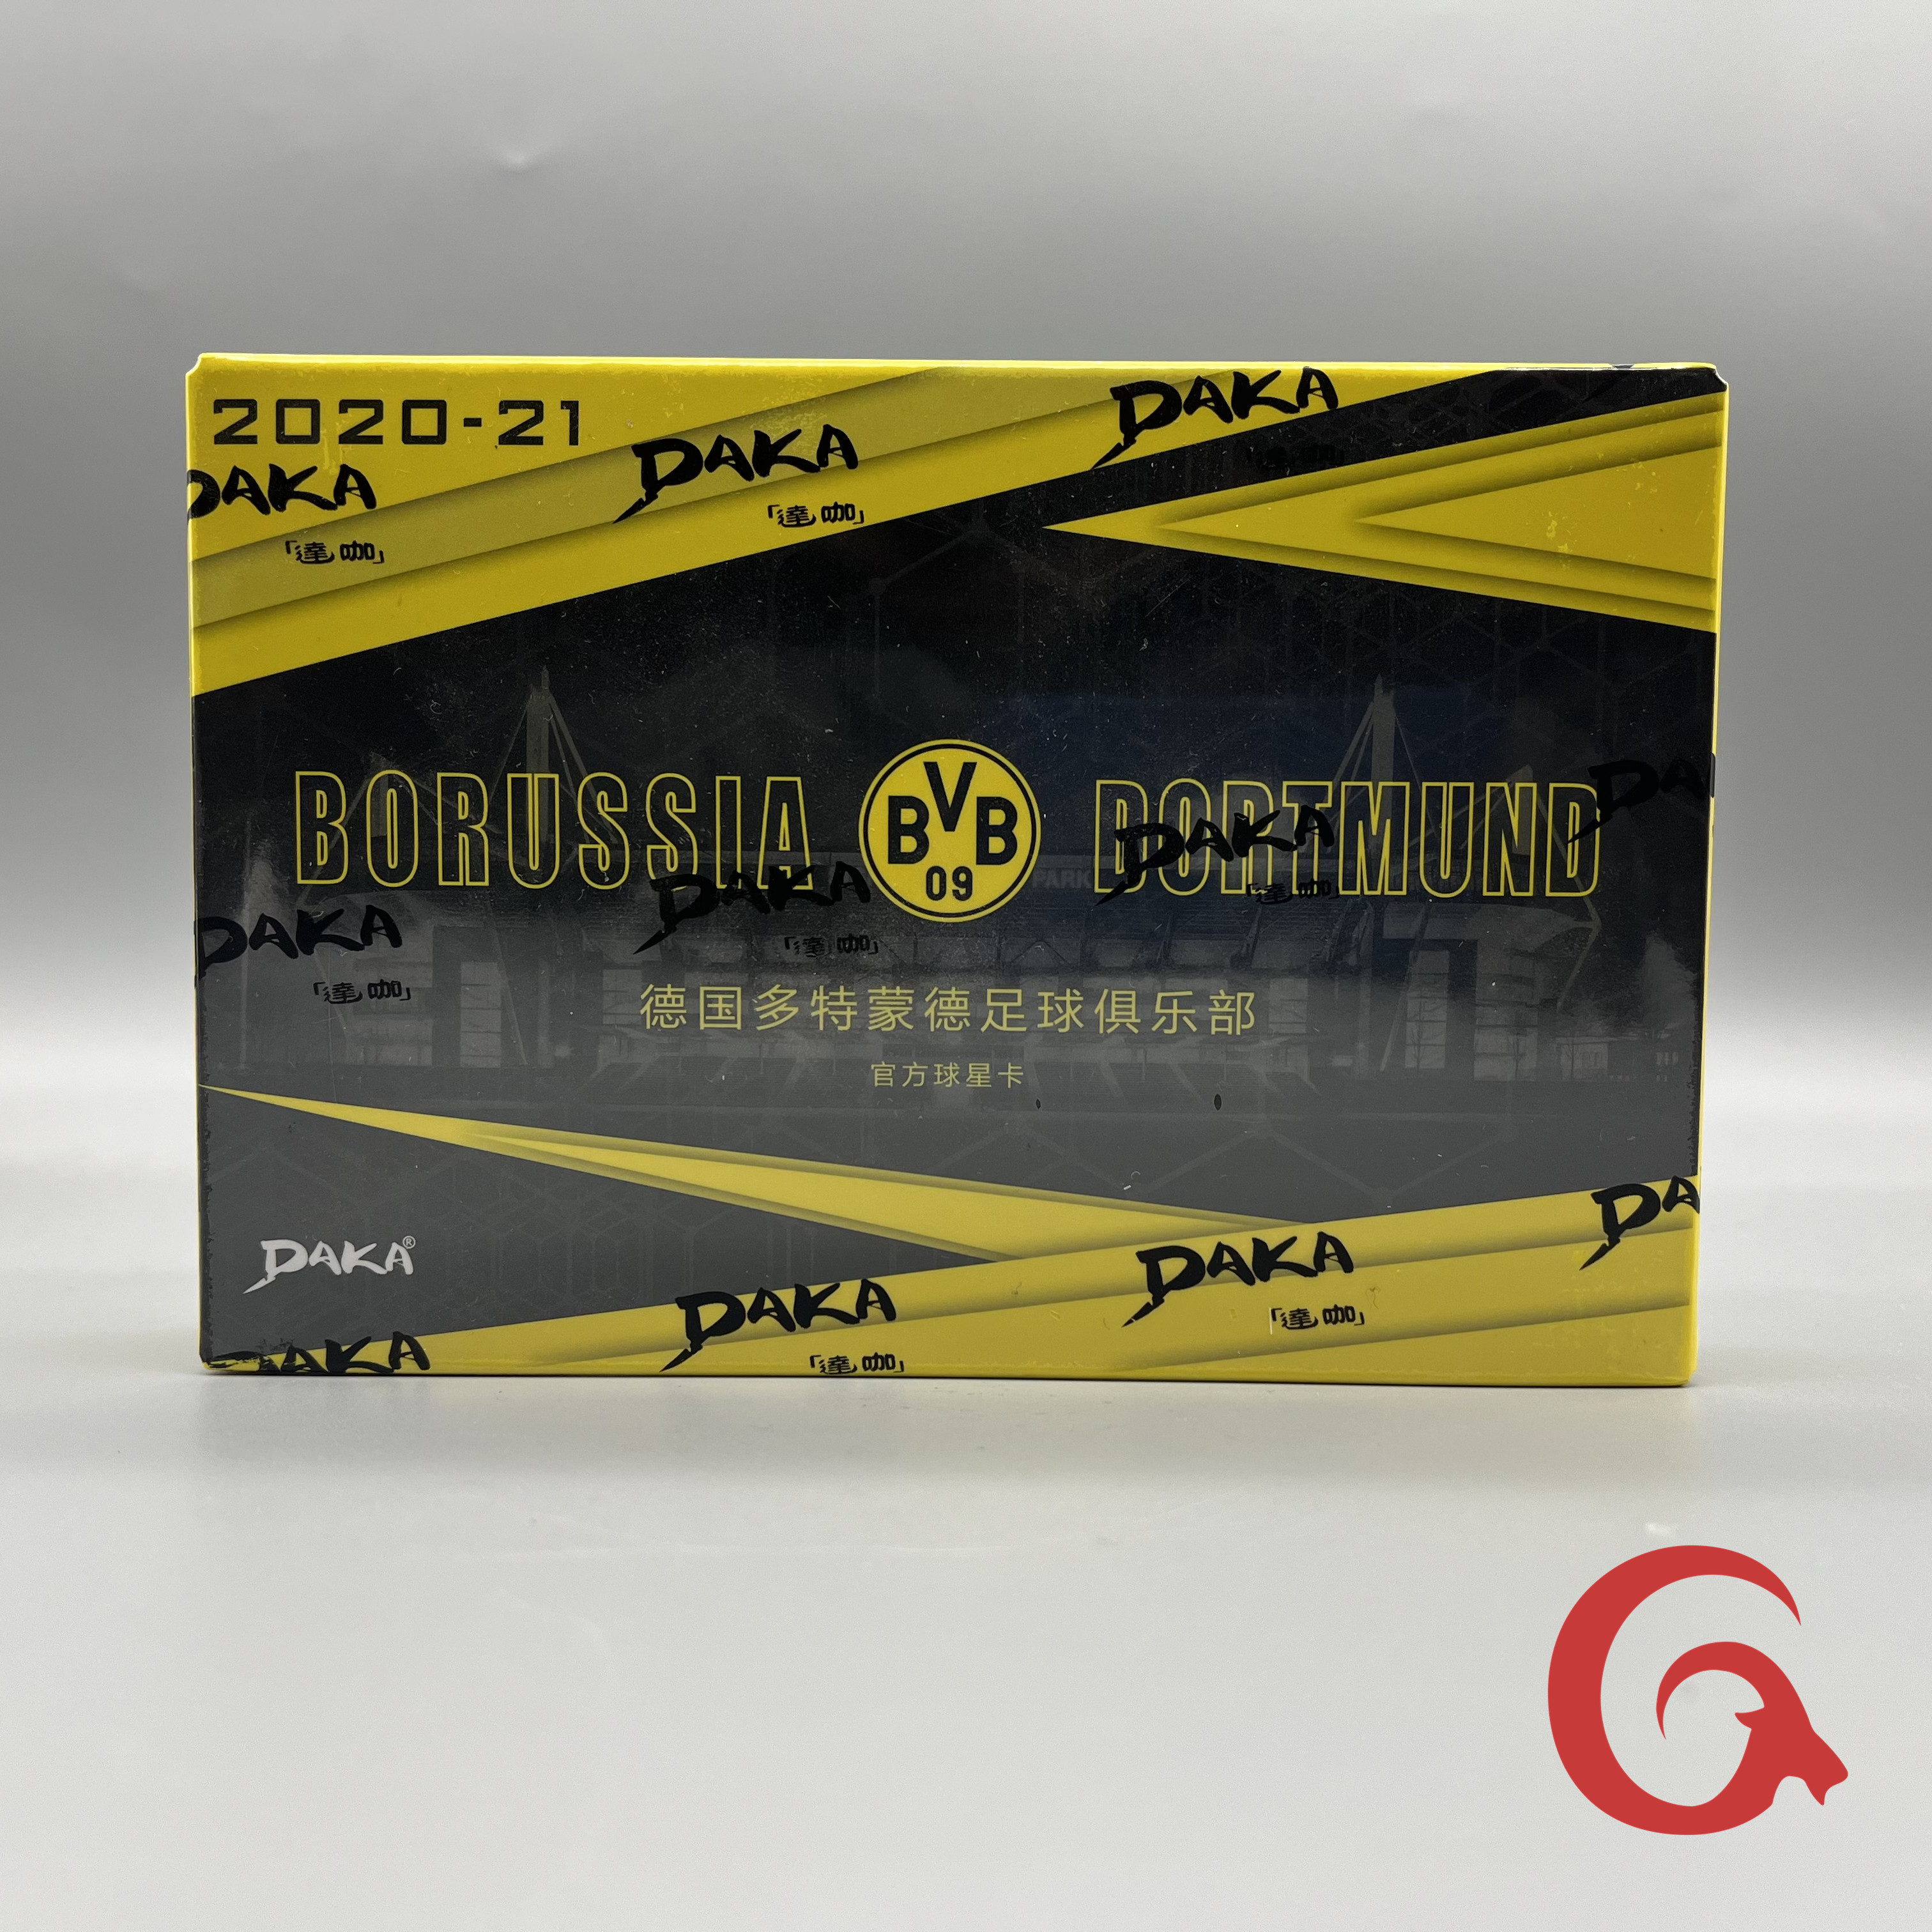 2020-21 DAKA 达咖 德国多特蒙德队盒 足球盒卡